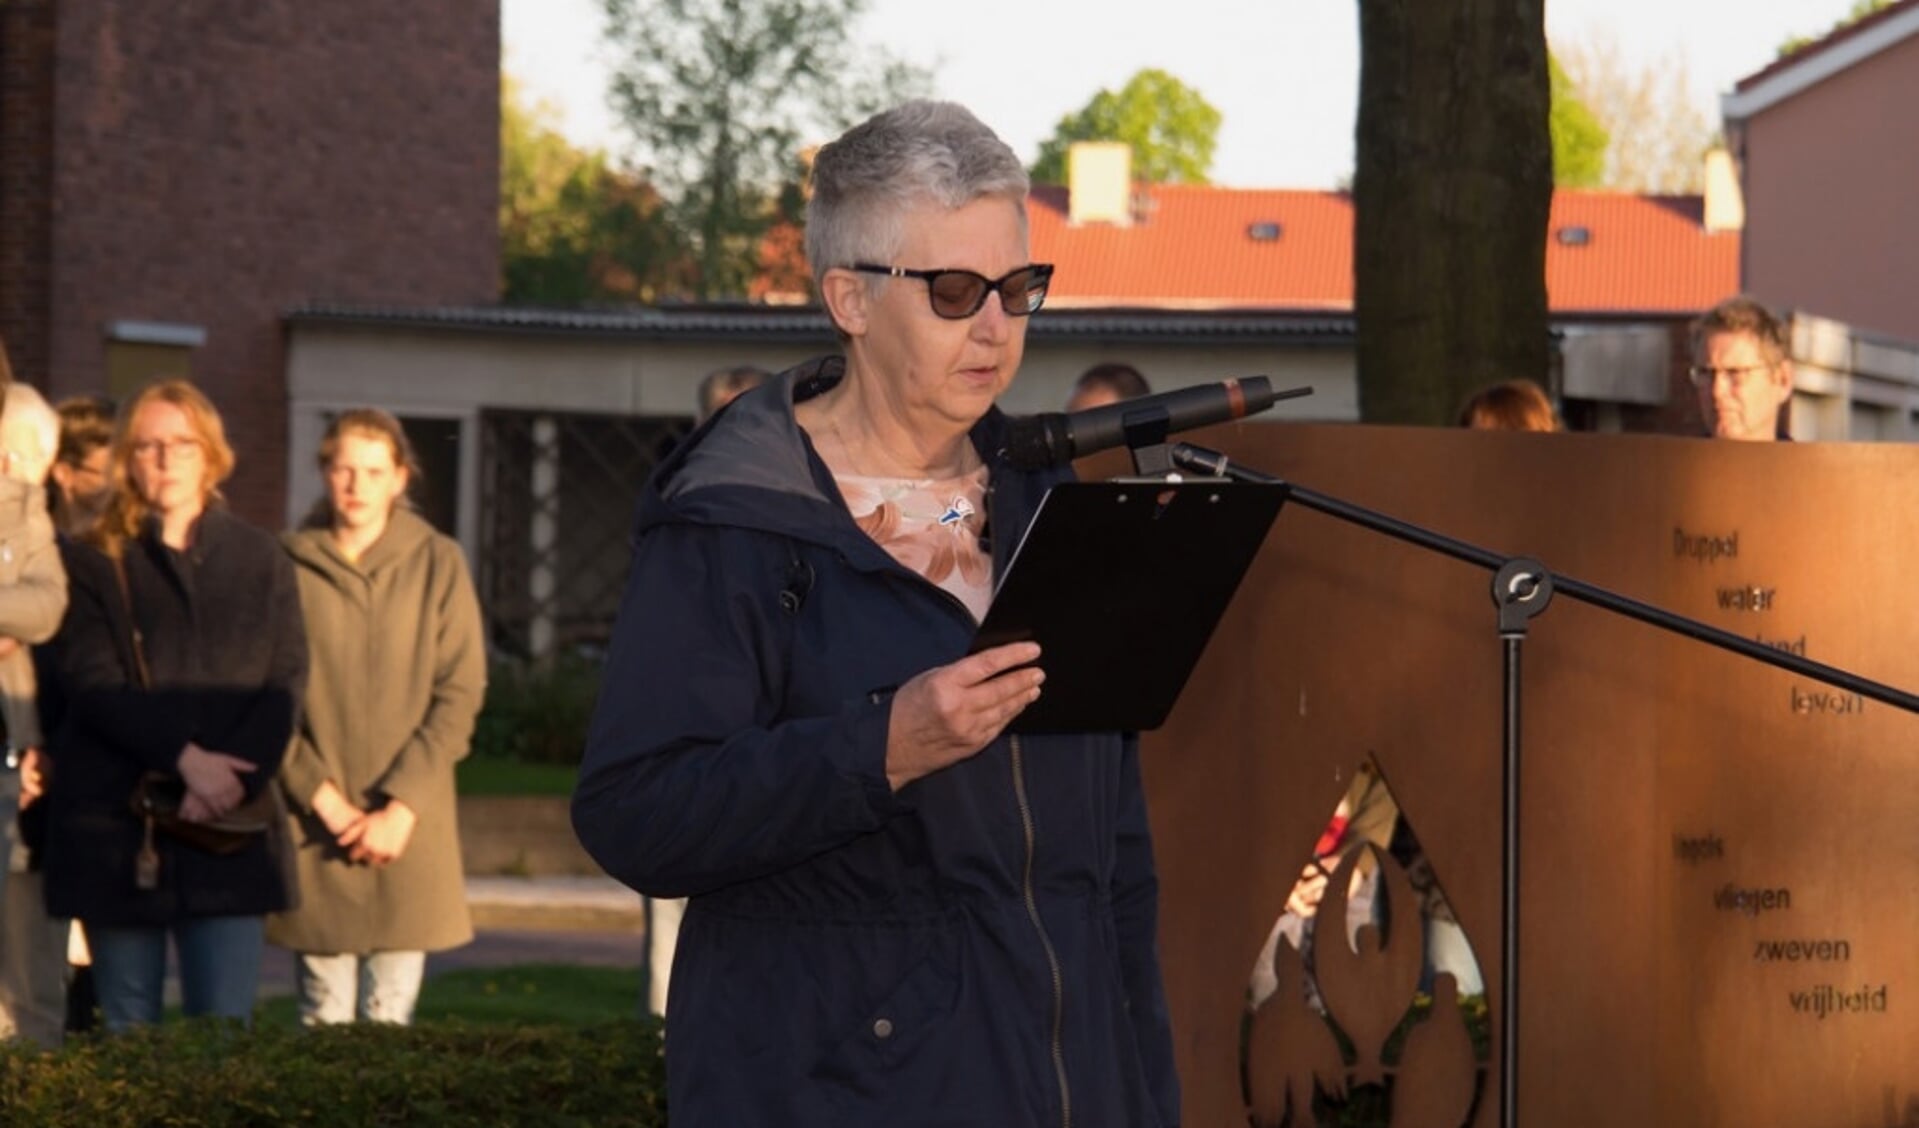  Francisca Wubben tijdens de dodenherdenking in Swifterbant.